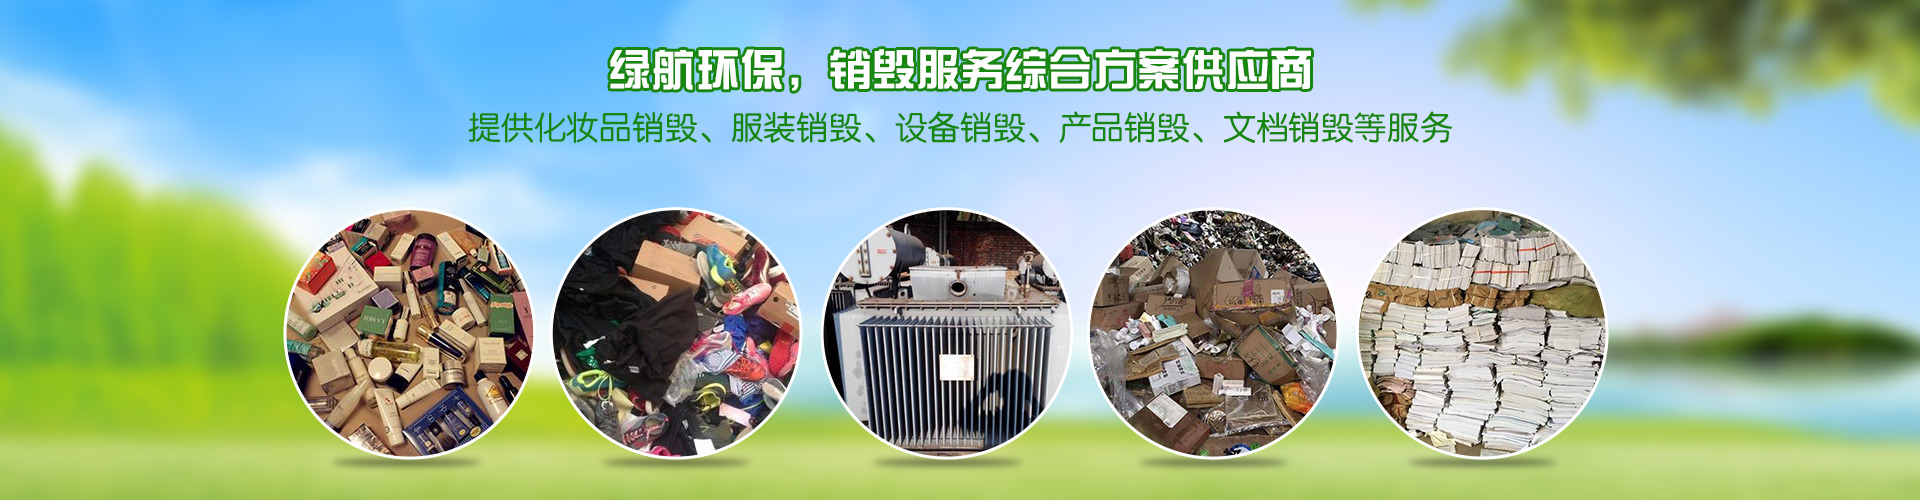 广州绿航环保科技有限公司-2